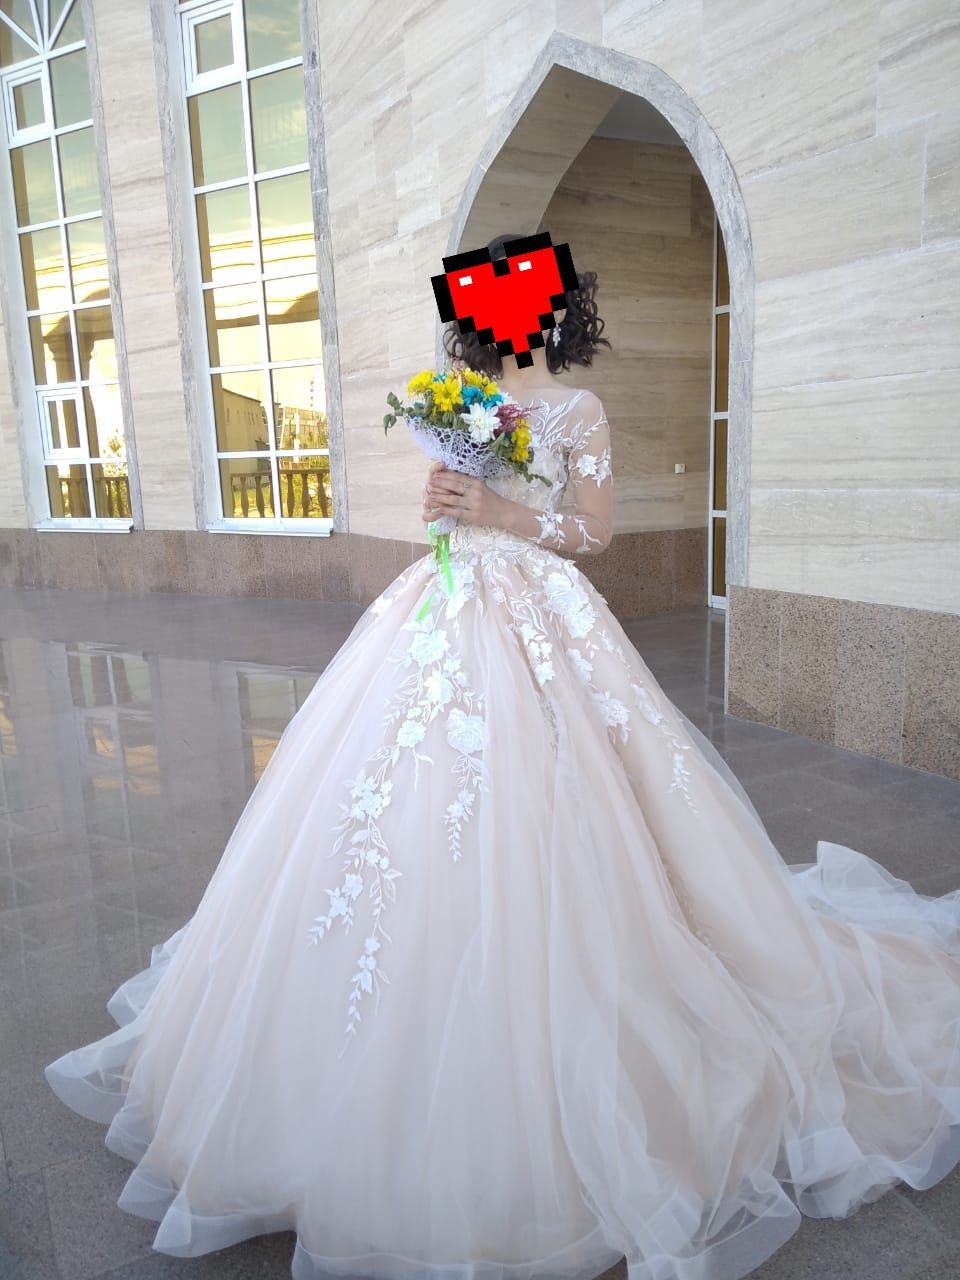 Продам шикарное свадебное платье размер 40-42; цвет Шампань